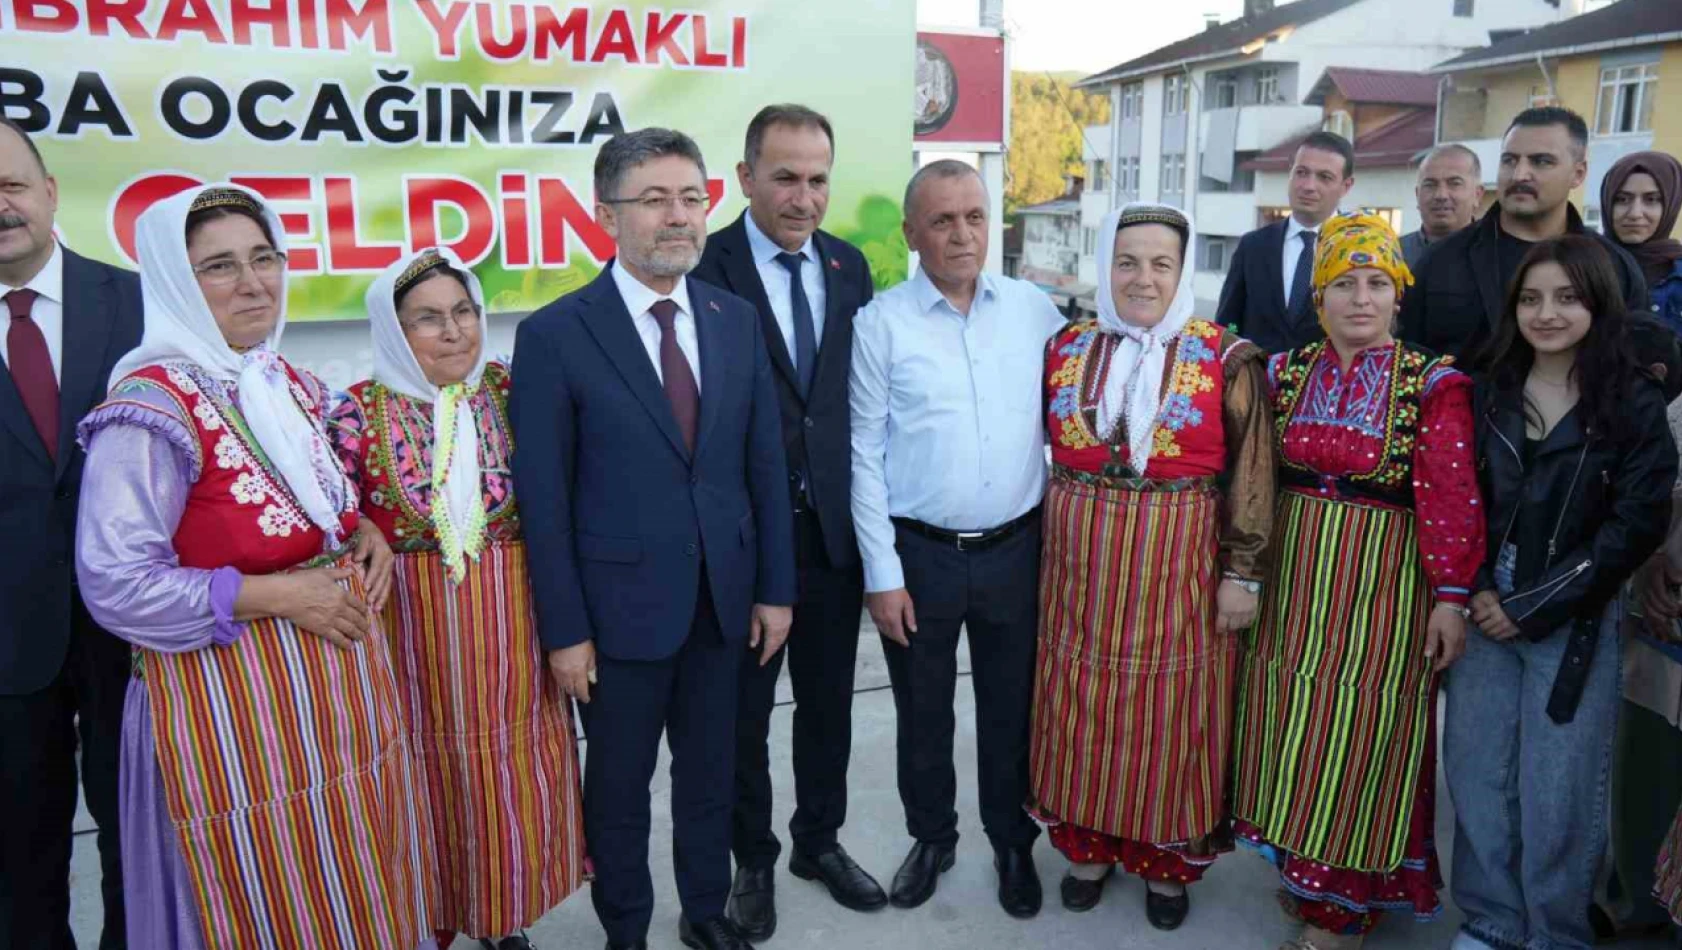 Bakan Yumaklı, Pınarbaşı'nda ilçe halkı ile bayramlaştı